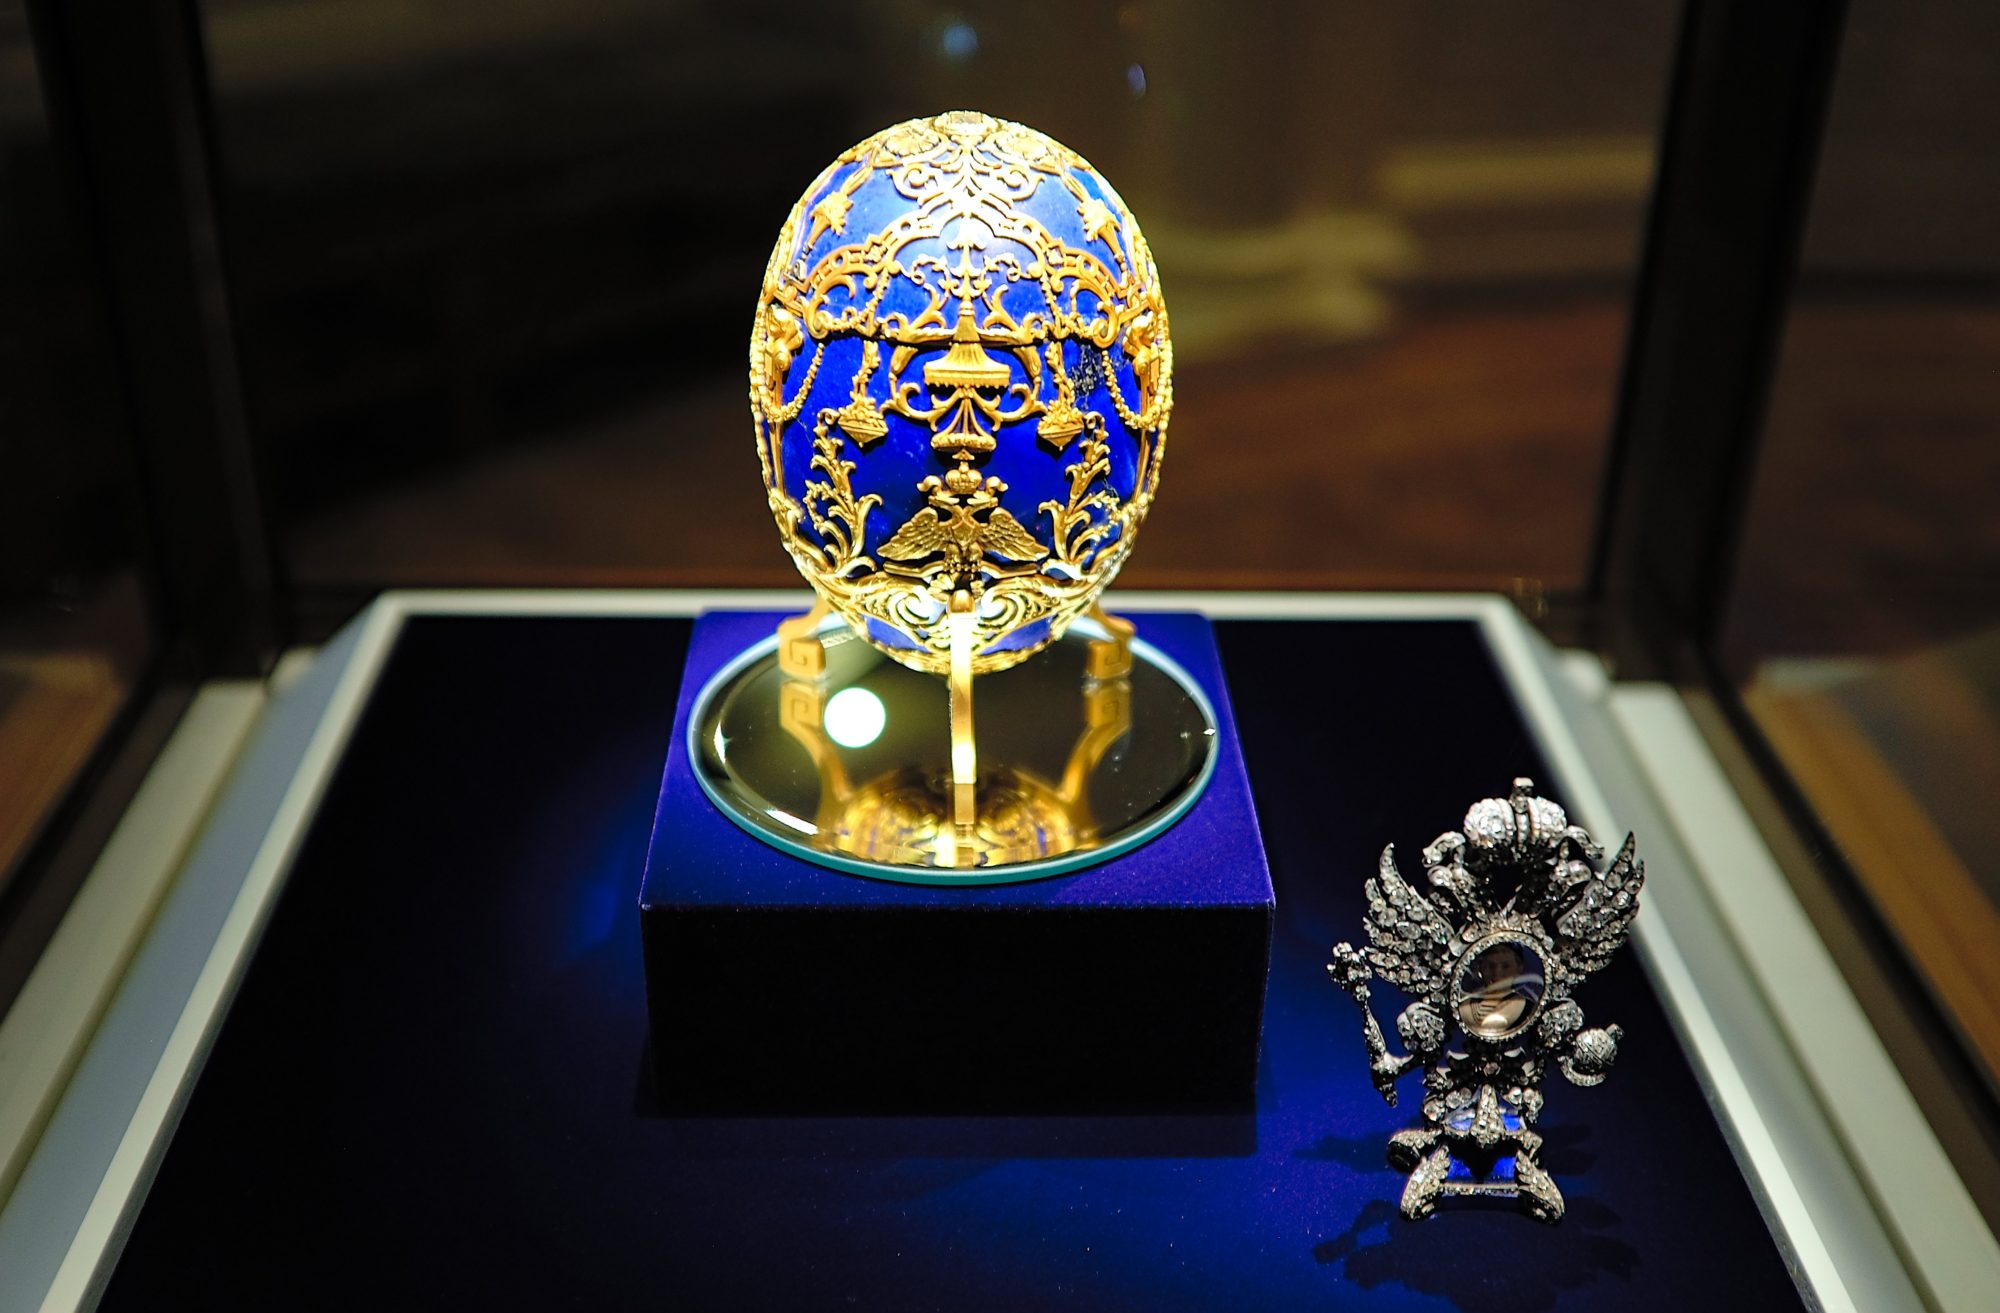 A blue Fabergé egg in a case